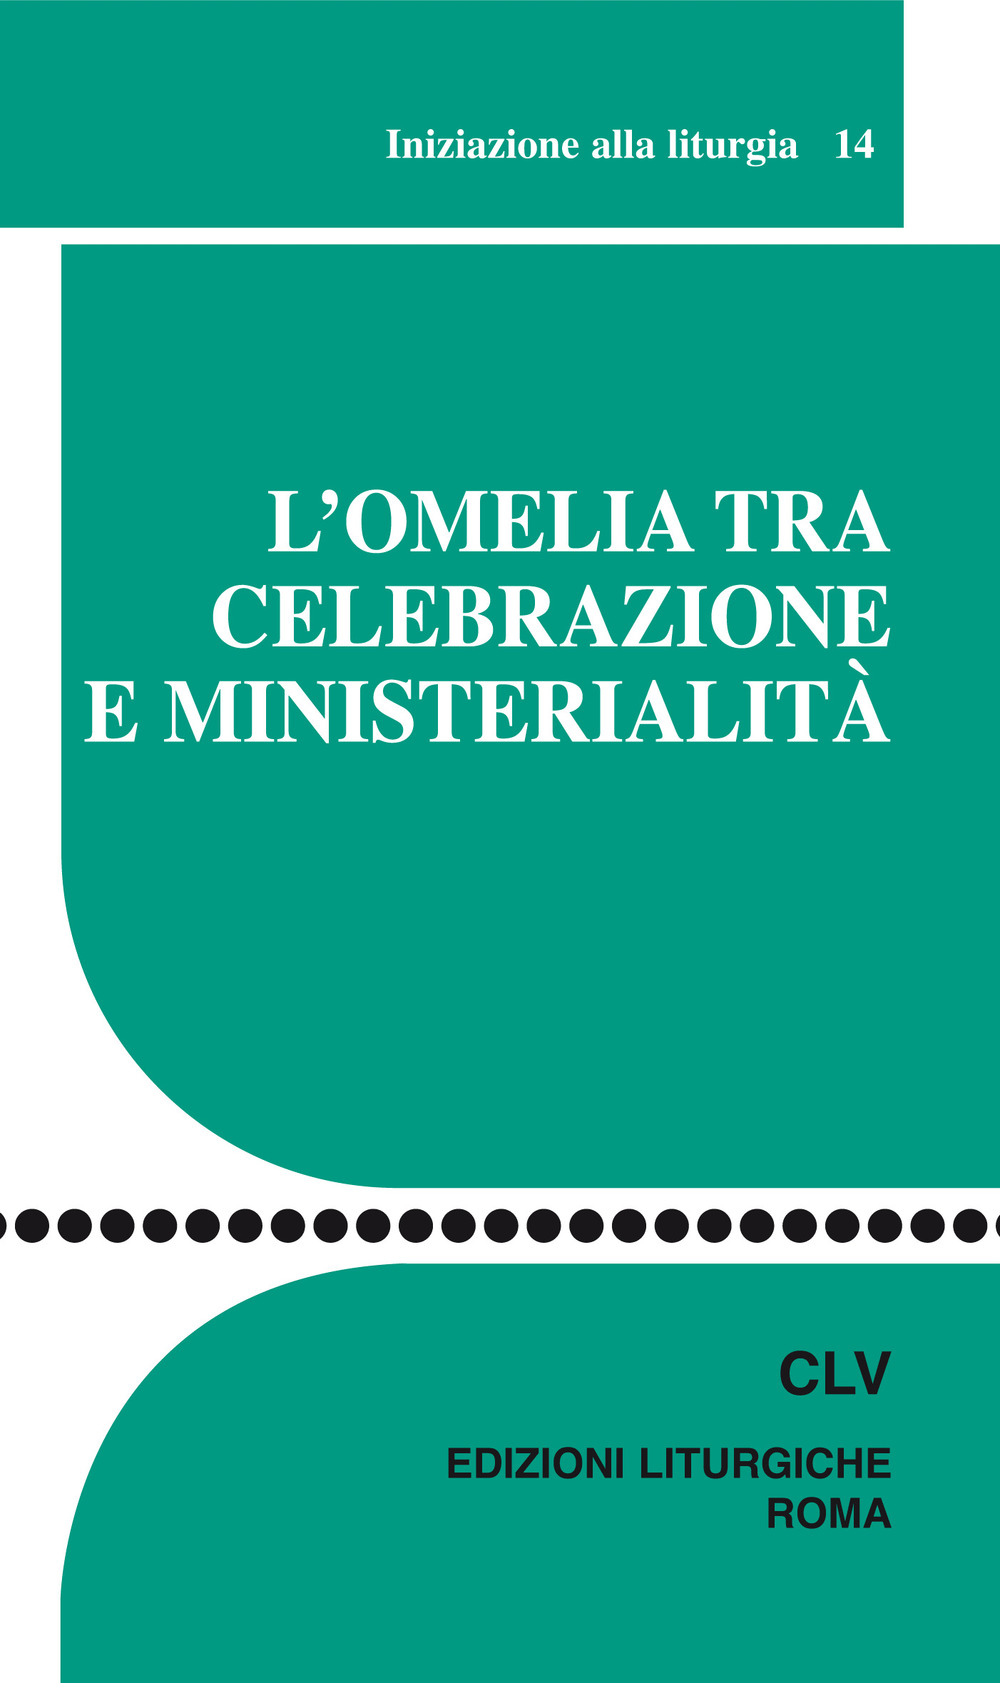 L'omelia tra celebrazione e ministerialità. Iniziazione alla liturgia